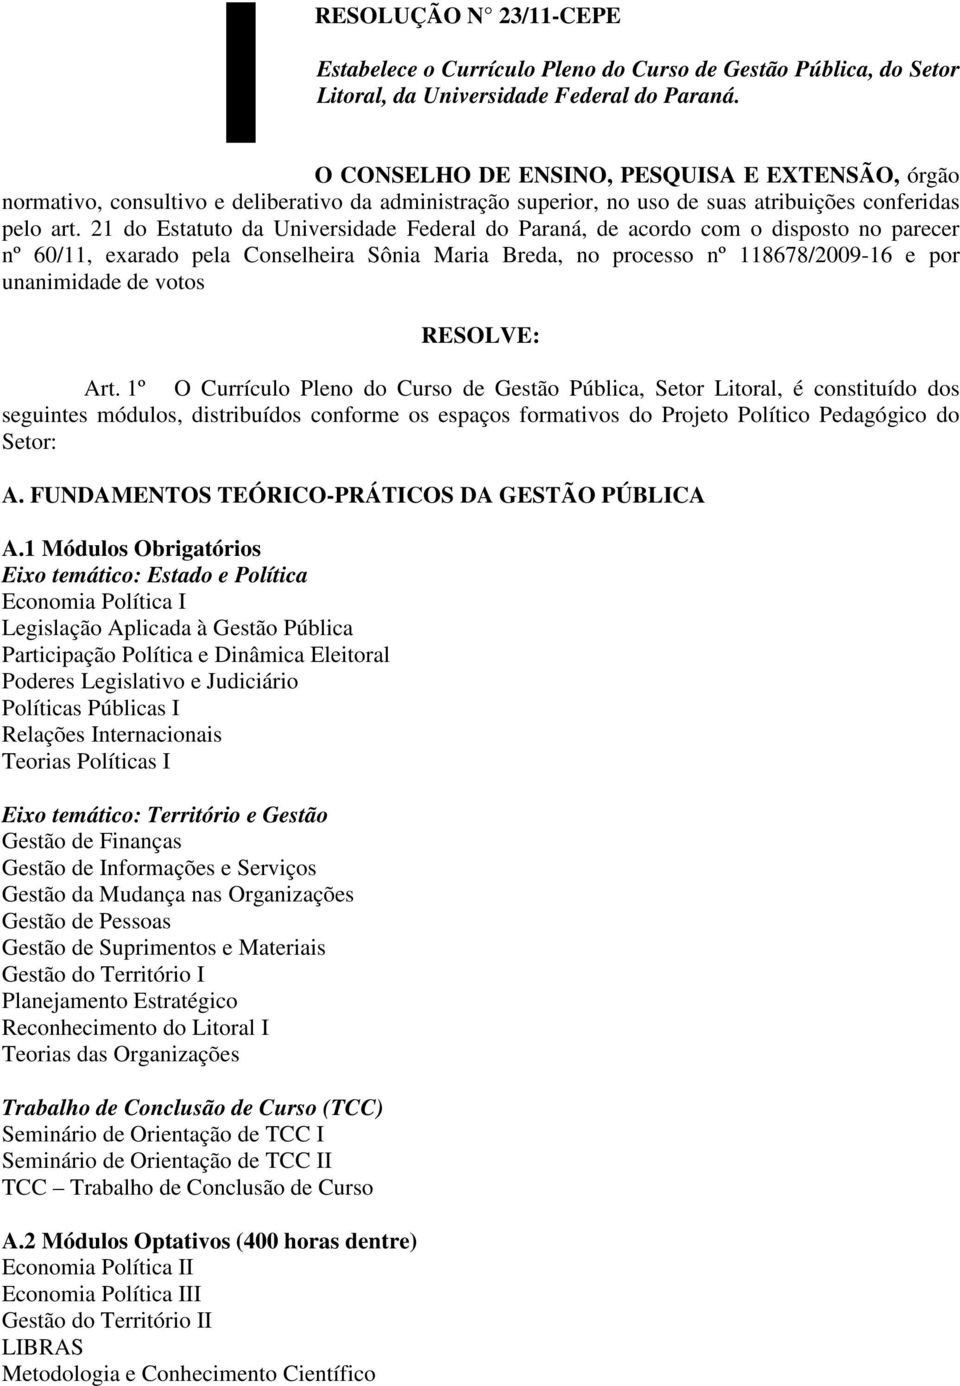 21 do Estatuto da Universidade Federal do Paraná, de acordo com o disposto no parecer nº 60/11, exarado pela Conselheira Sônia Maria Breda, no processo nº 118678/2009-16 e por unanimidade de votos